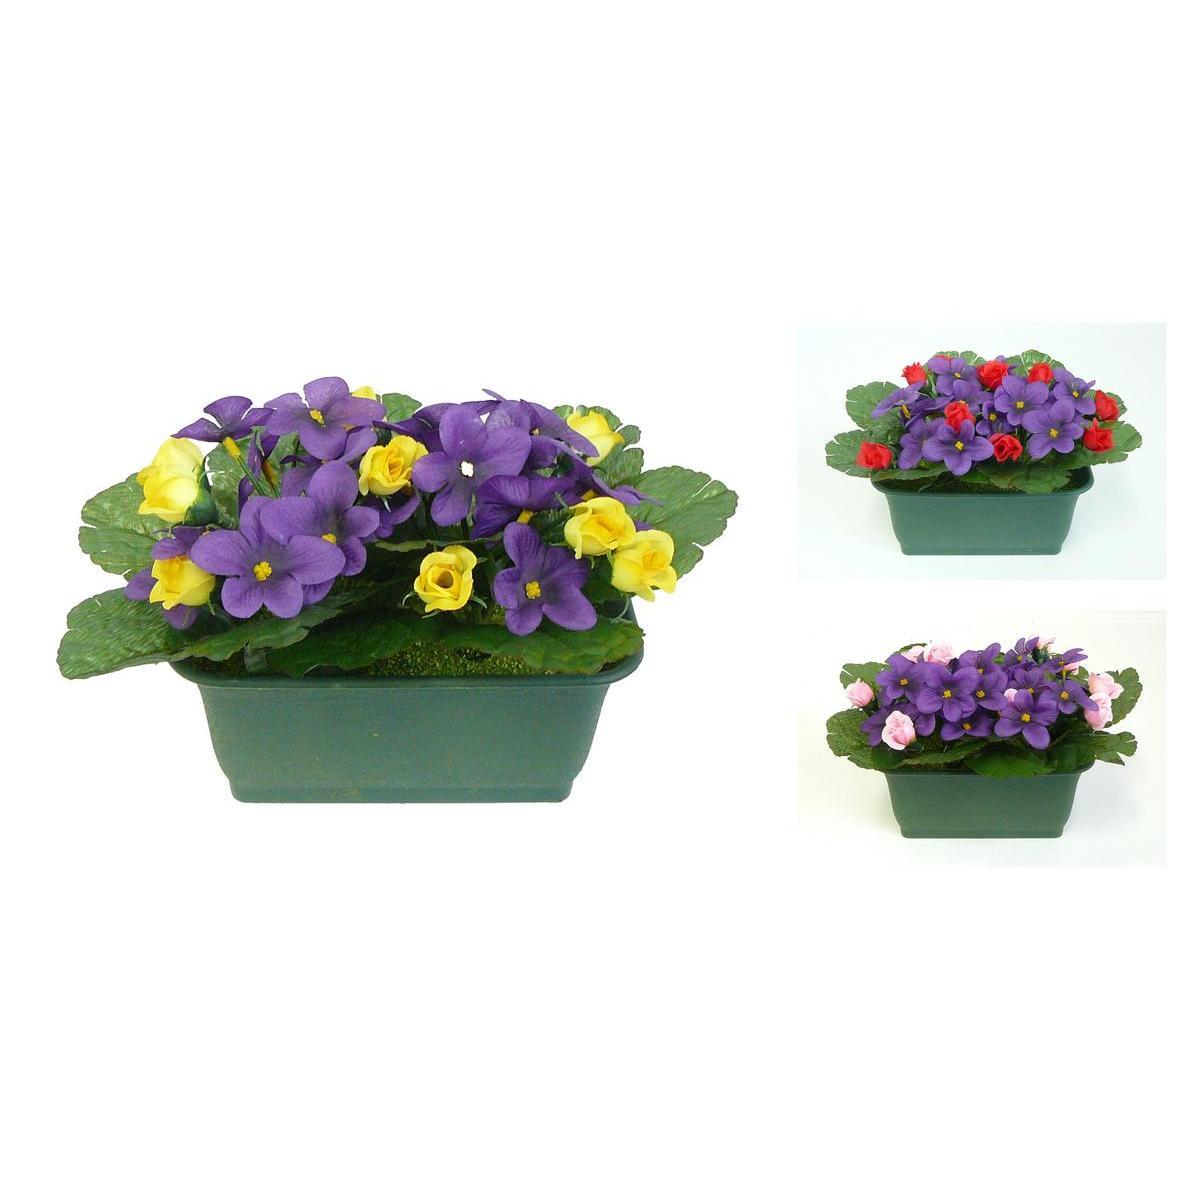 Jardinière de violettes et rosettes - Plastique - 18 x H 16 cm - Différents coloris